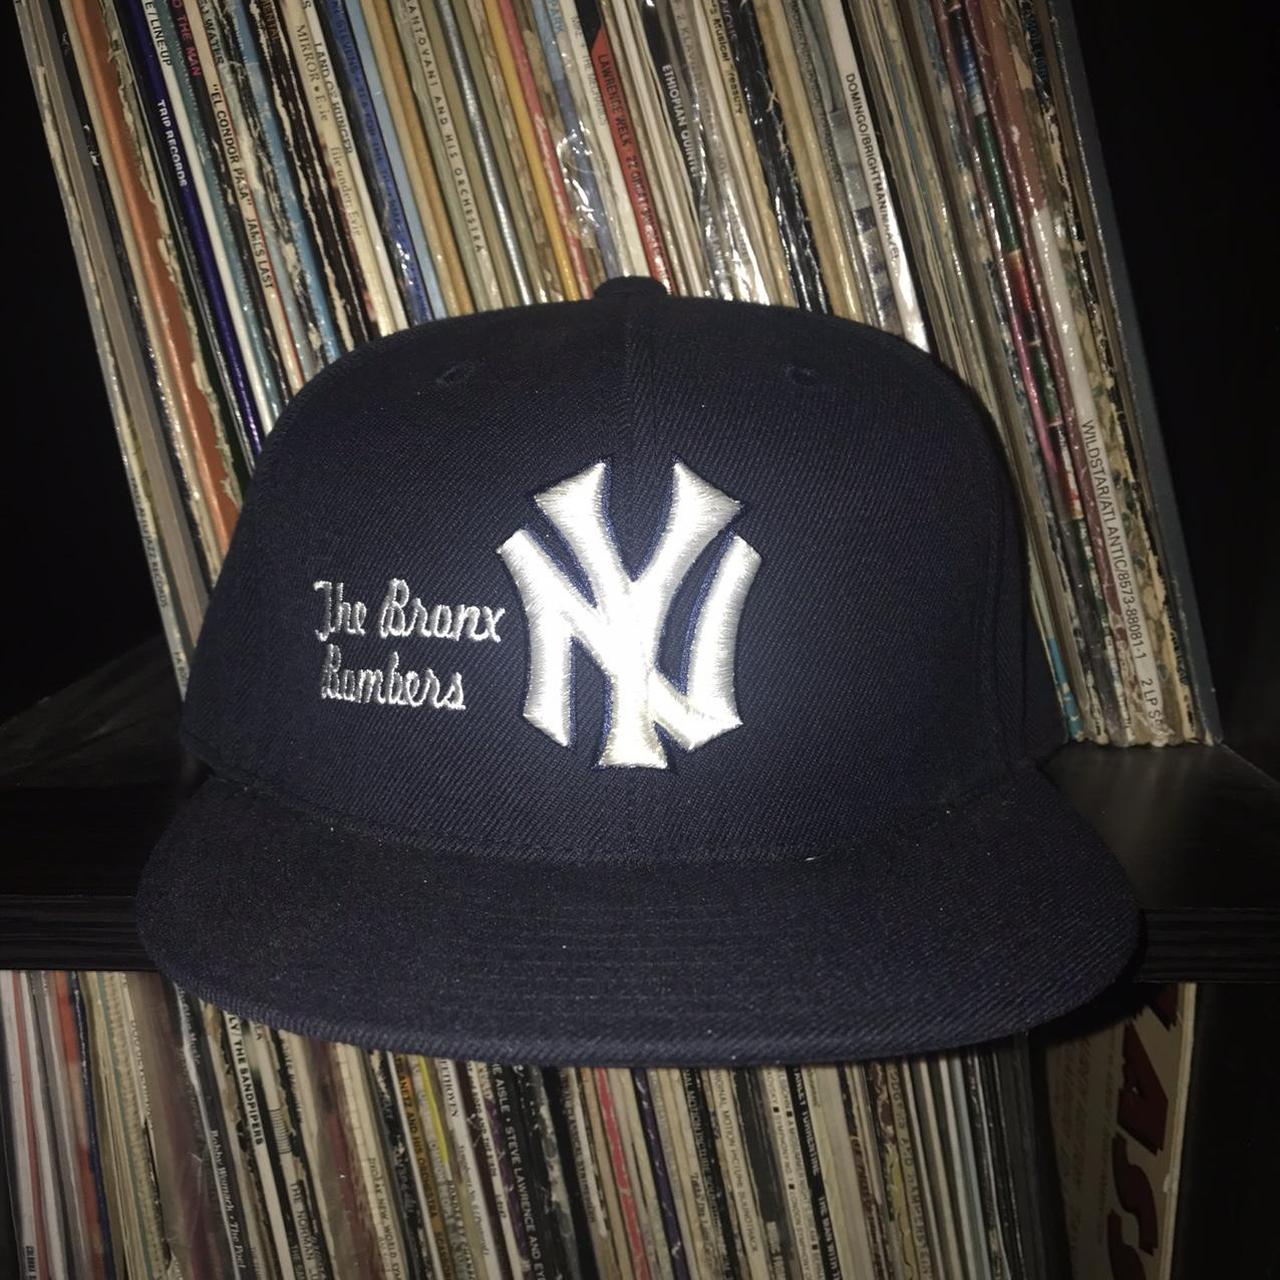 New Era New York Yankees with bronx bombers logo in white